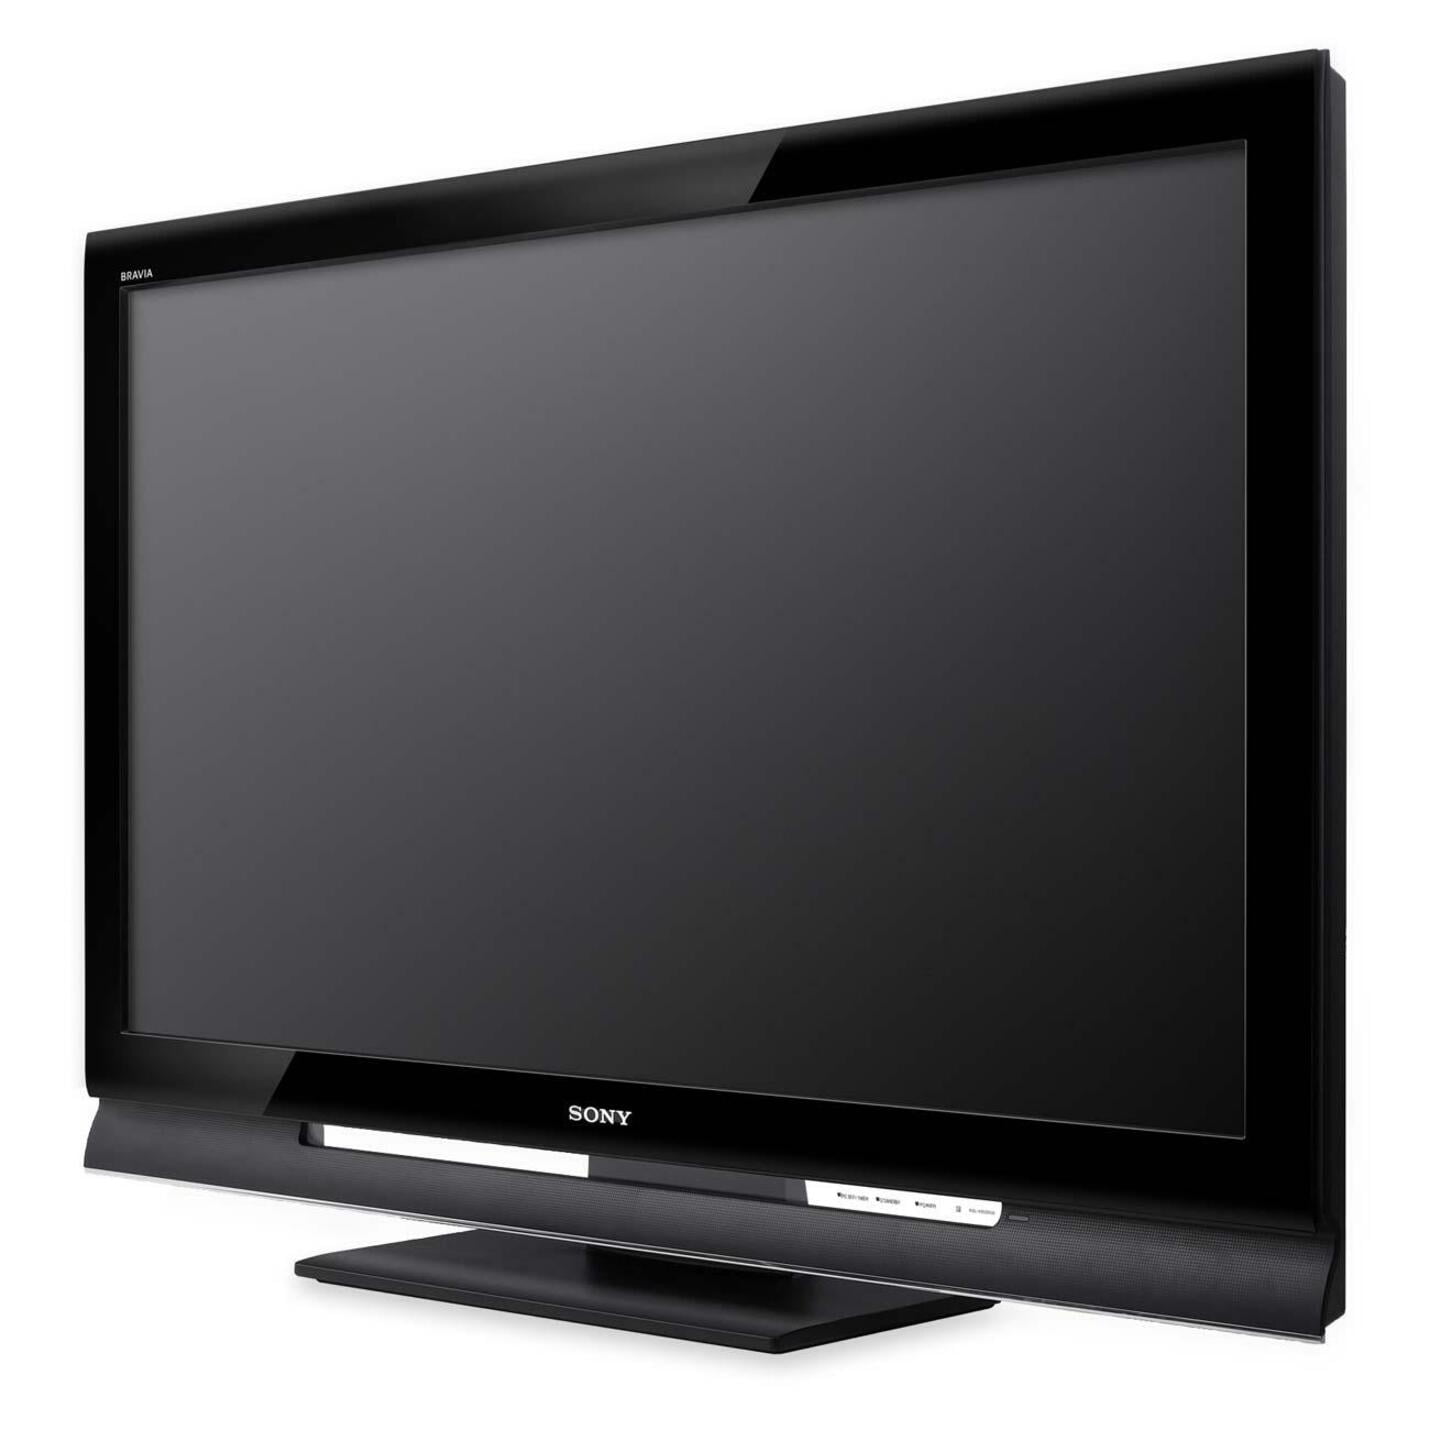 Sony 40" Class LCD TV (KDL-40S4100) -